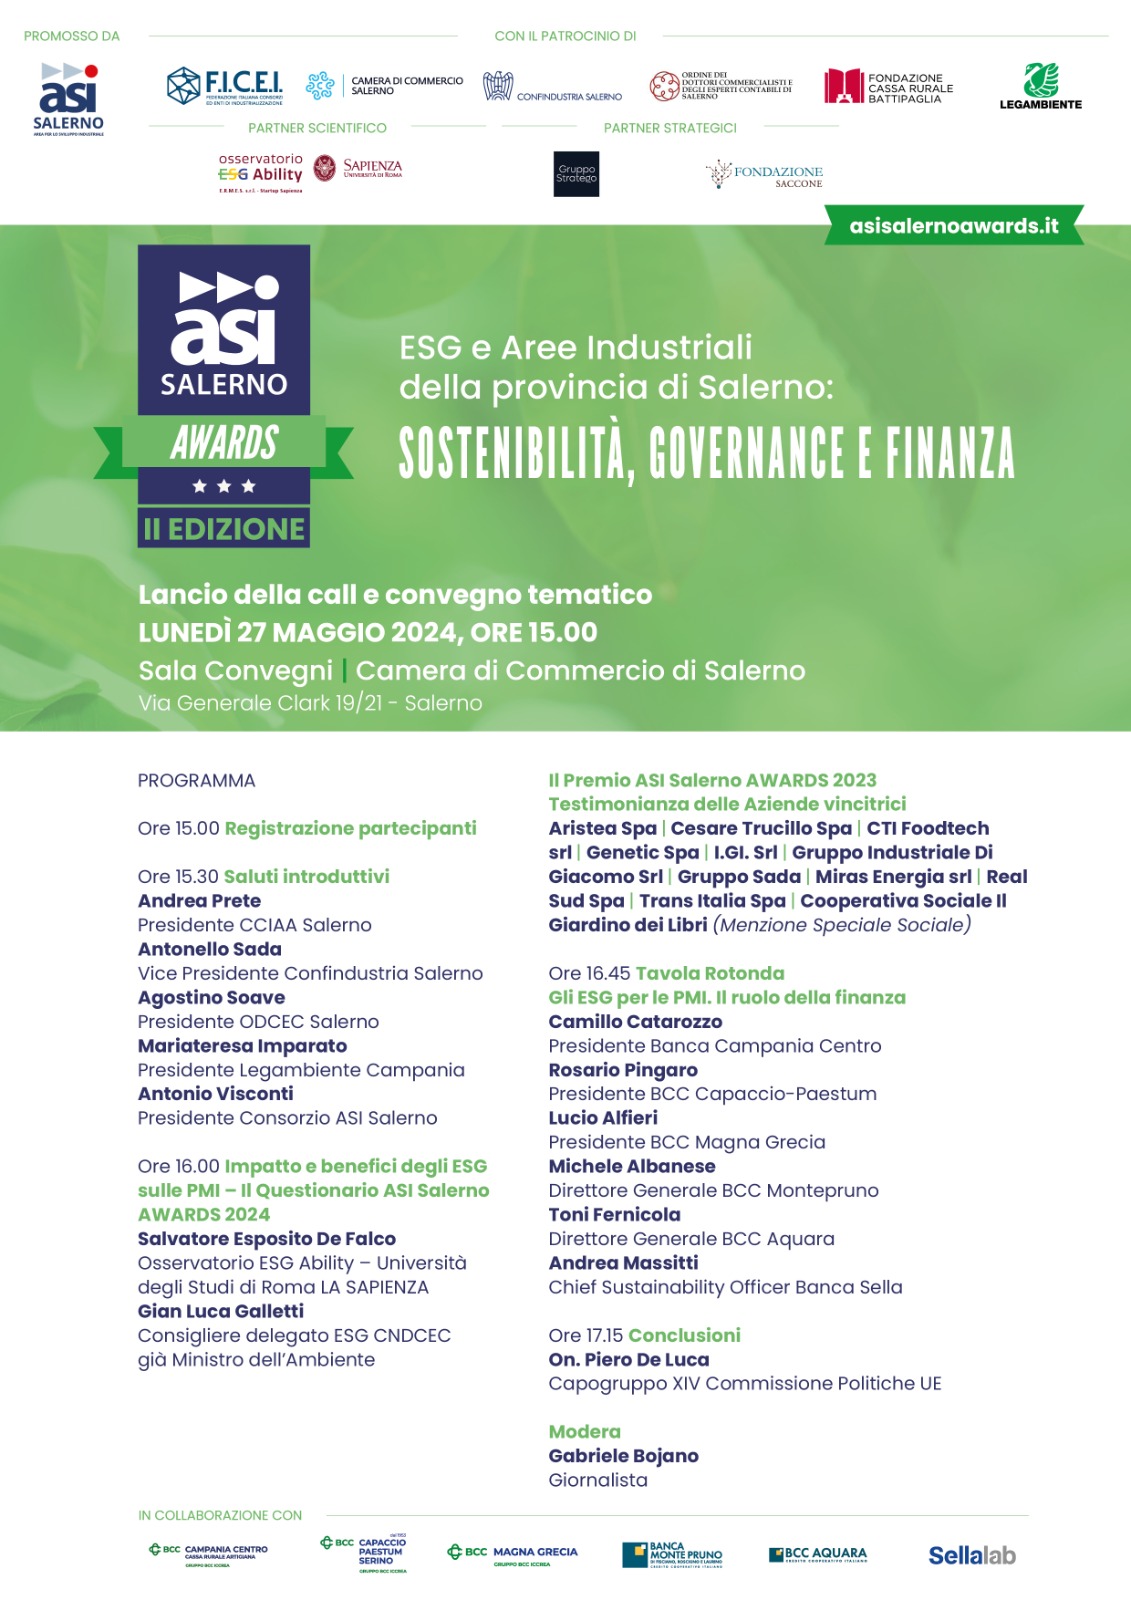 Salerno: ASI Salerno Awards,  ESG e Aree Industriali, convegno tematico e lancio call II ediz.  